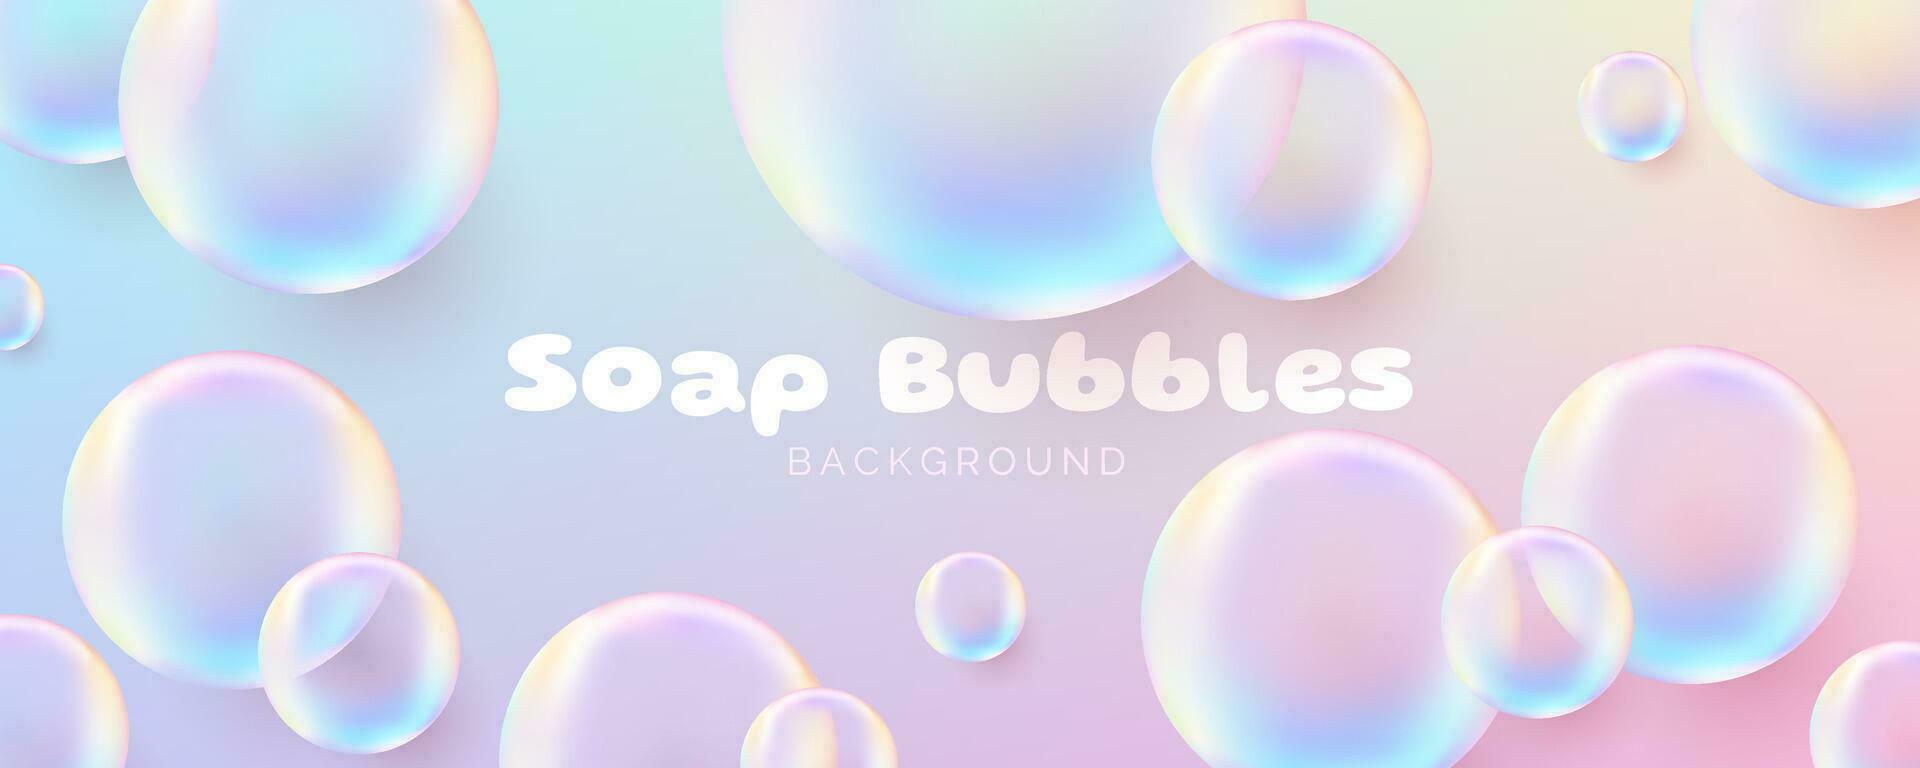 realistisch zeep bubbels. schattig spandoek. transparant bubbels met een glanzend regenboog oppervlak, overbrengen een schoon en luchtig concept. niet ai gegenereerd. vector